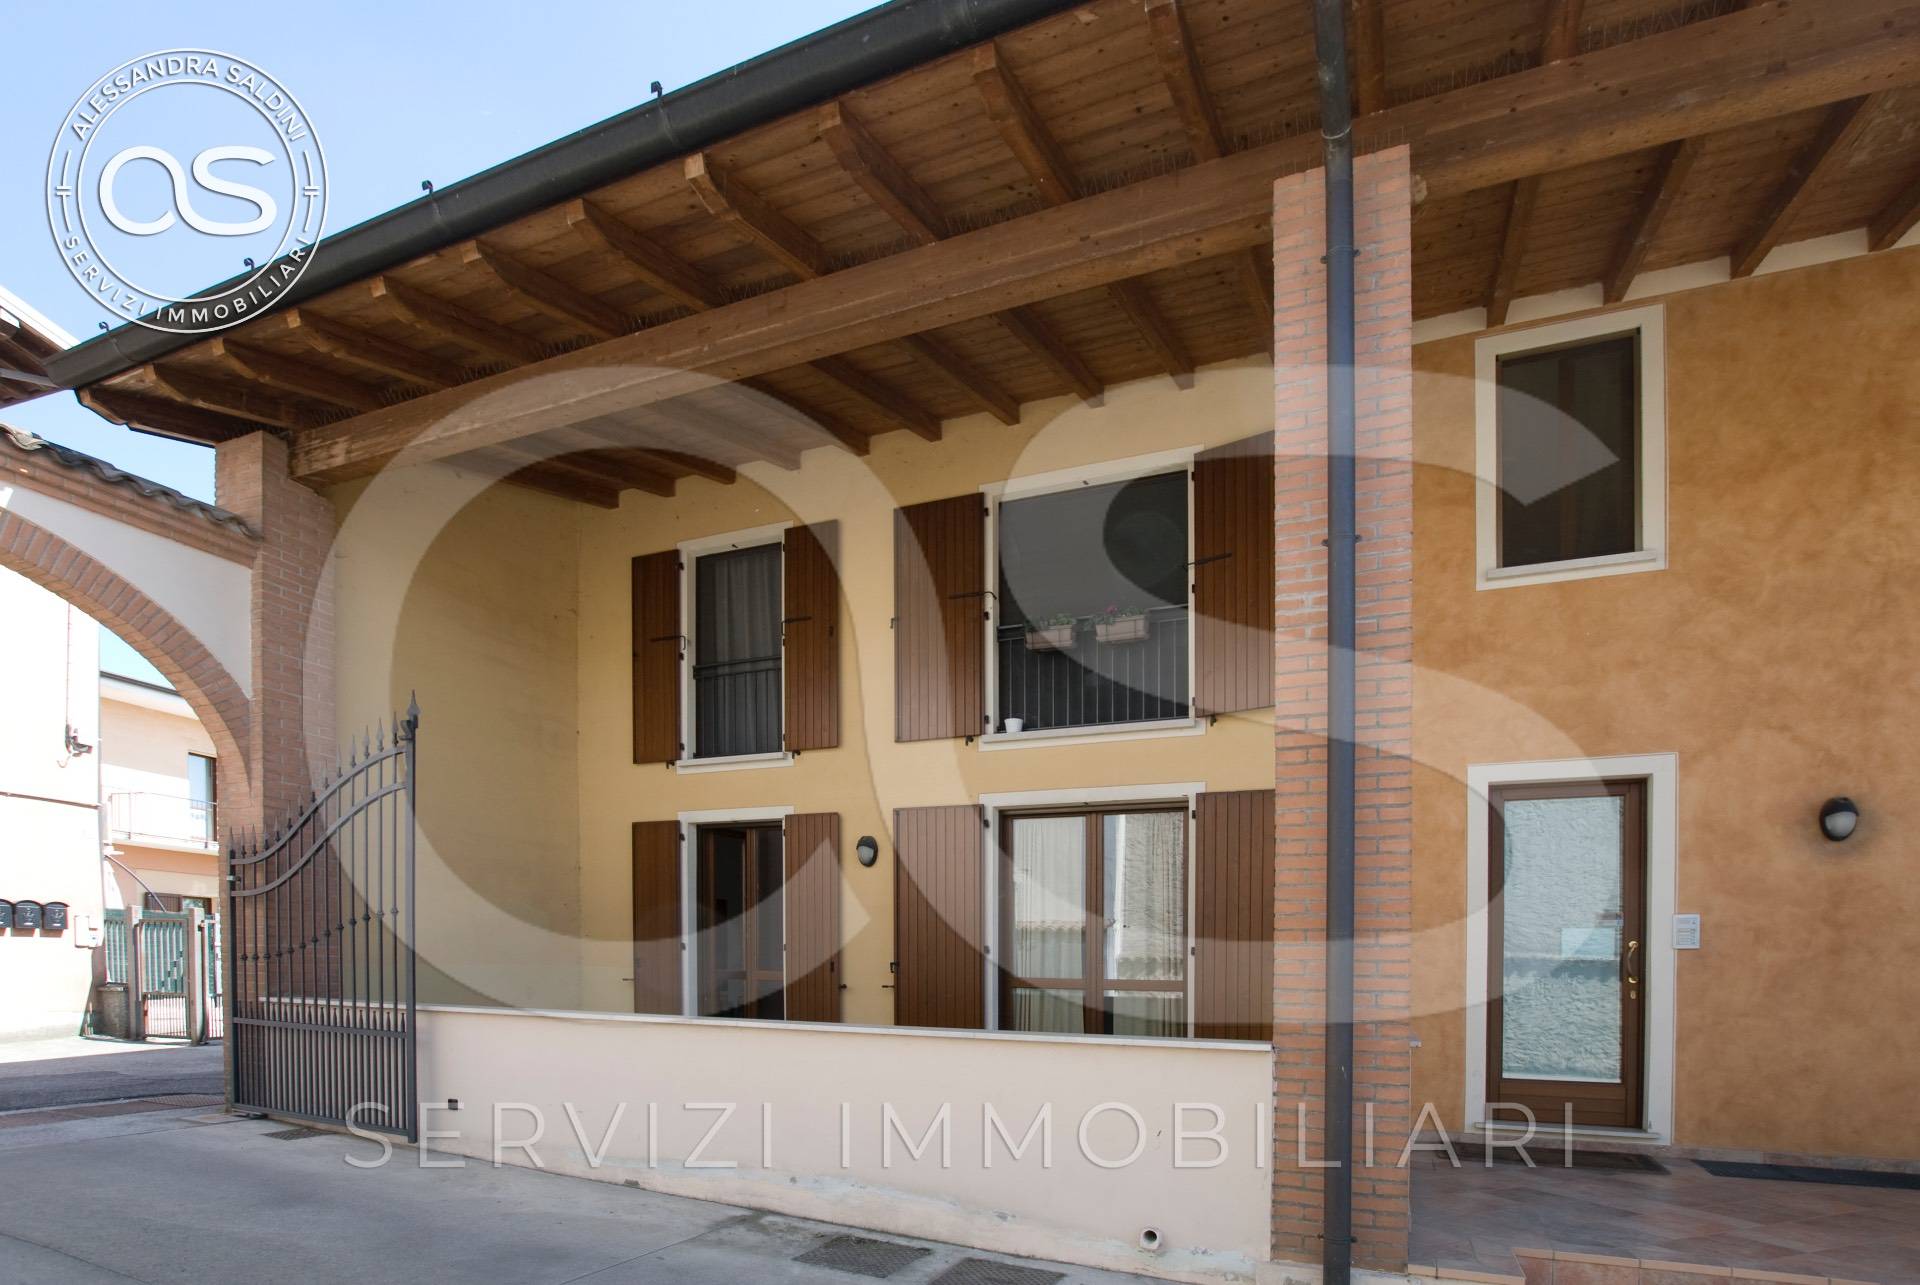 Appartamento in vendita a San Gervasio Bresciano, 3 locali, prezzo € 85.000 | PortaleAgenzieImmobiliari.it